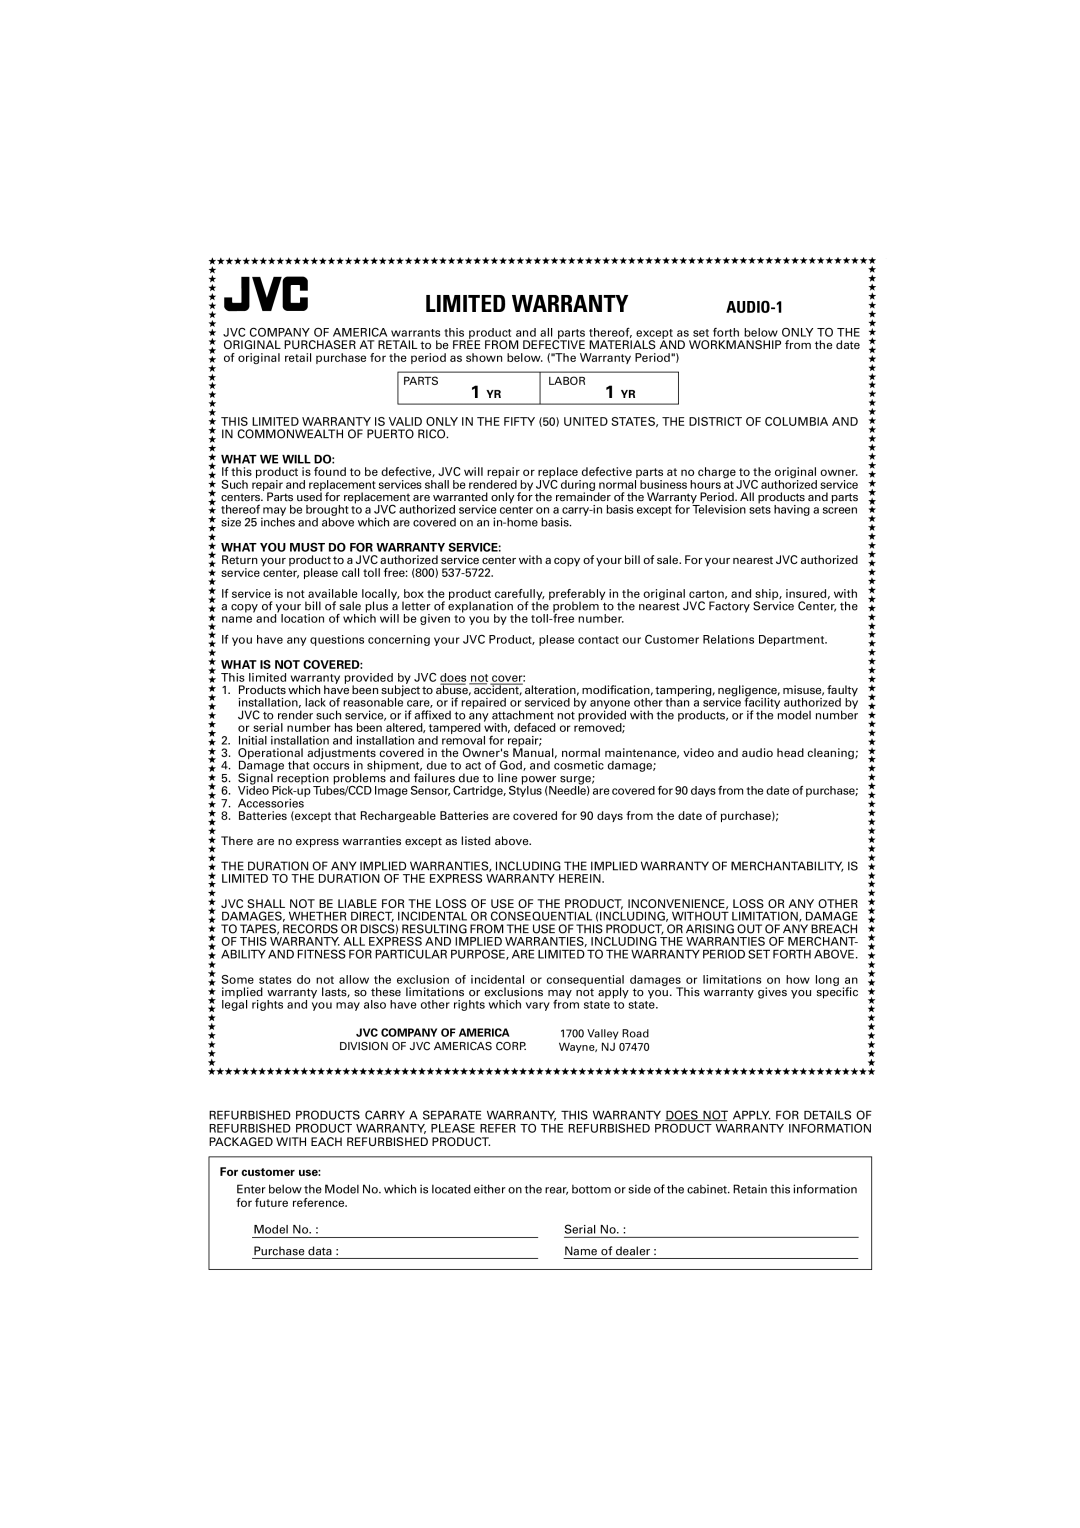 JVC XL-FZ700 manual 1 YR, Limited Warranty, AUDIO-1 